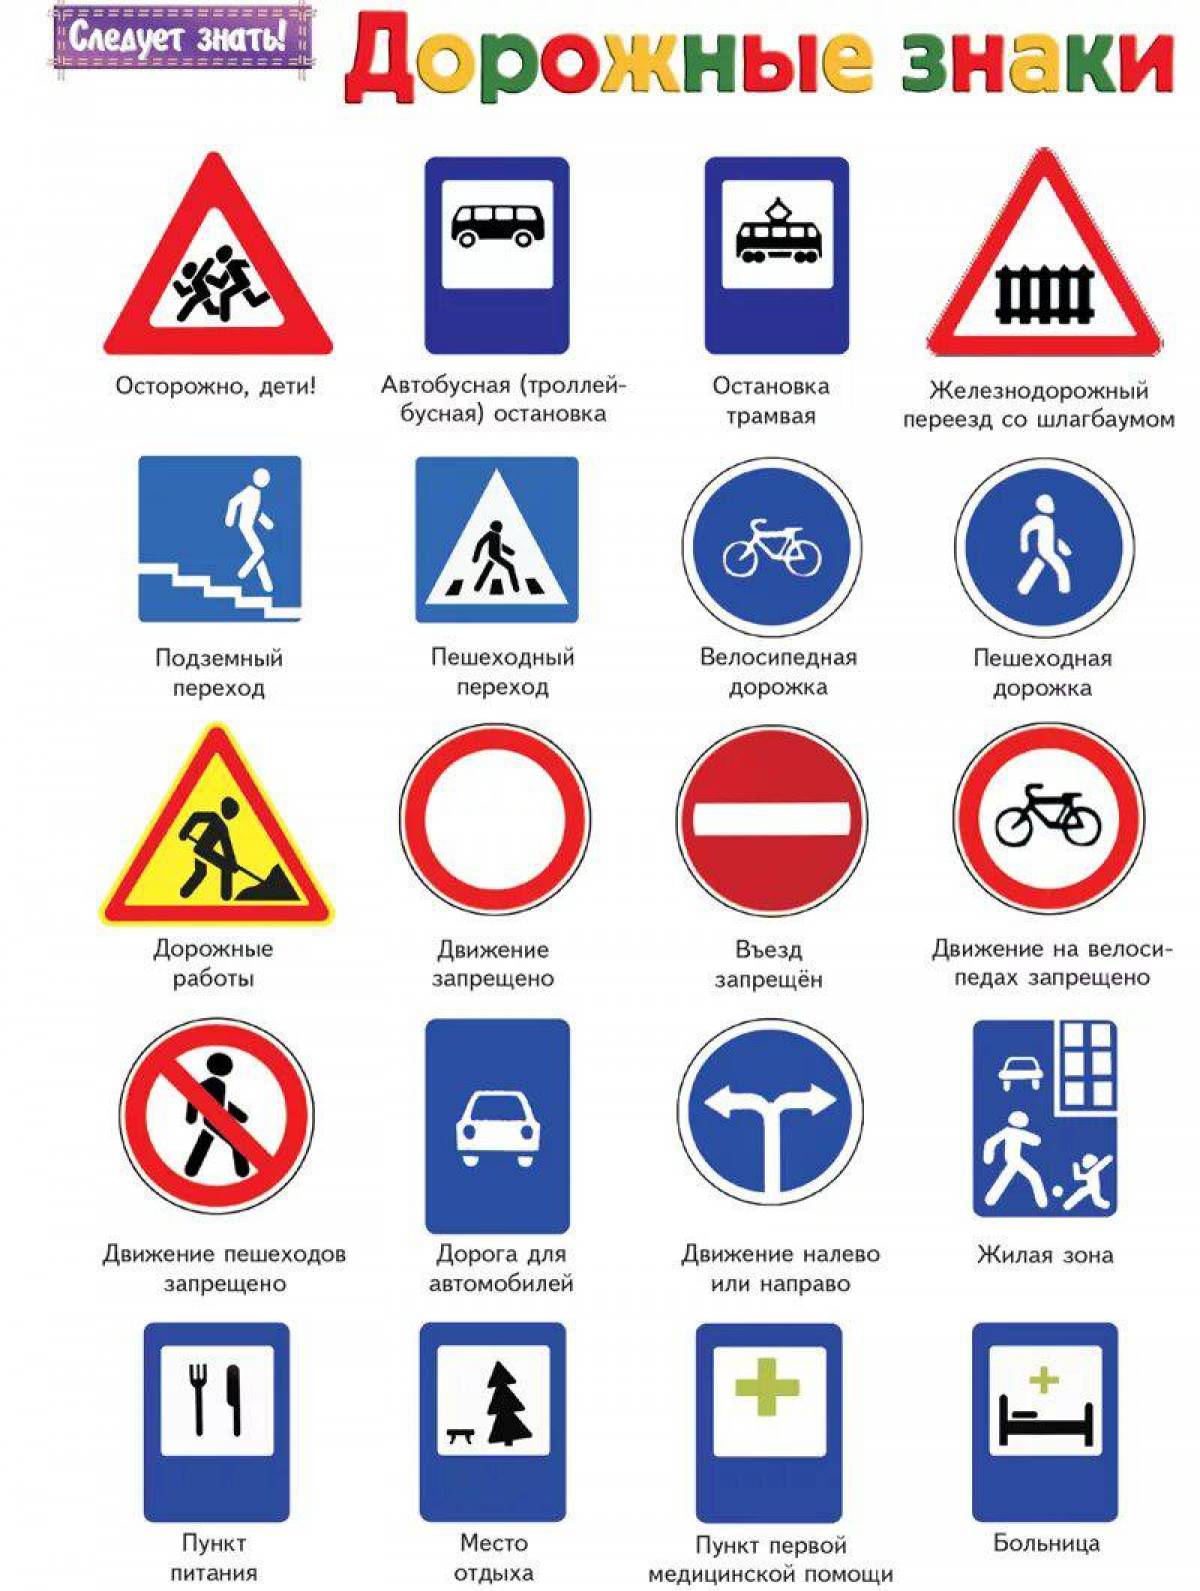 Дорожного движения картинки с пояснениями. Что обозначают знаки дорожного движения. Обозначение знаков правил дорожного движения. Дорожные знаки с пояснениями и обозначениями для водителя. Название знаков дорожного движения.